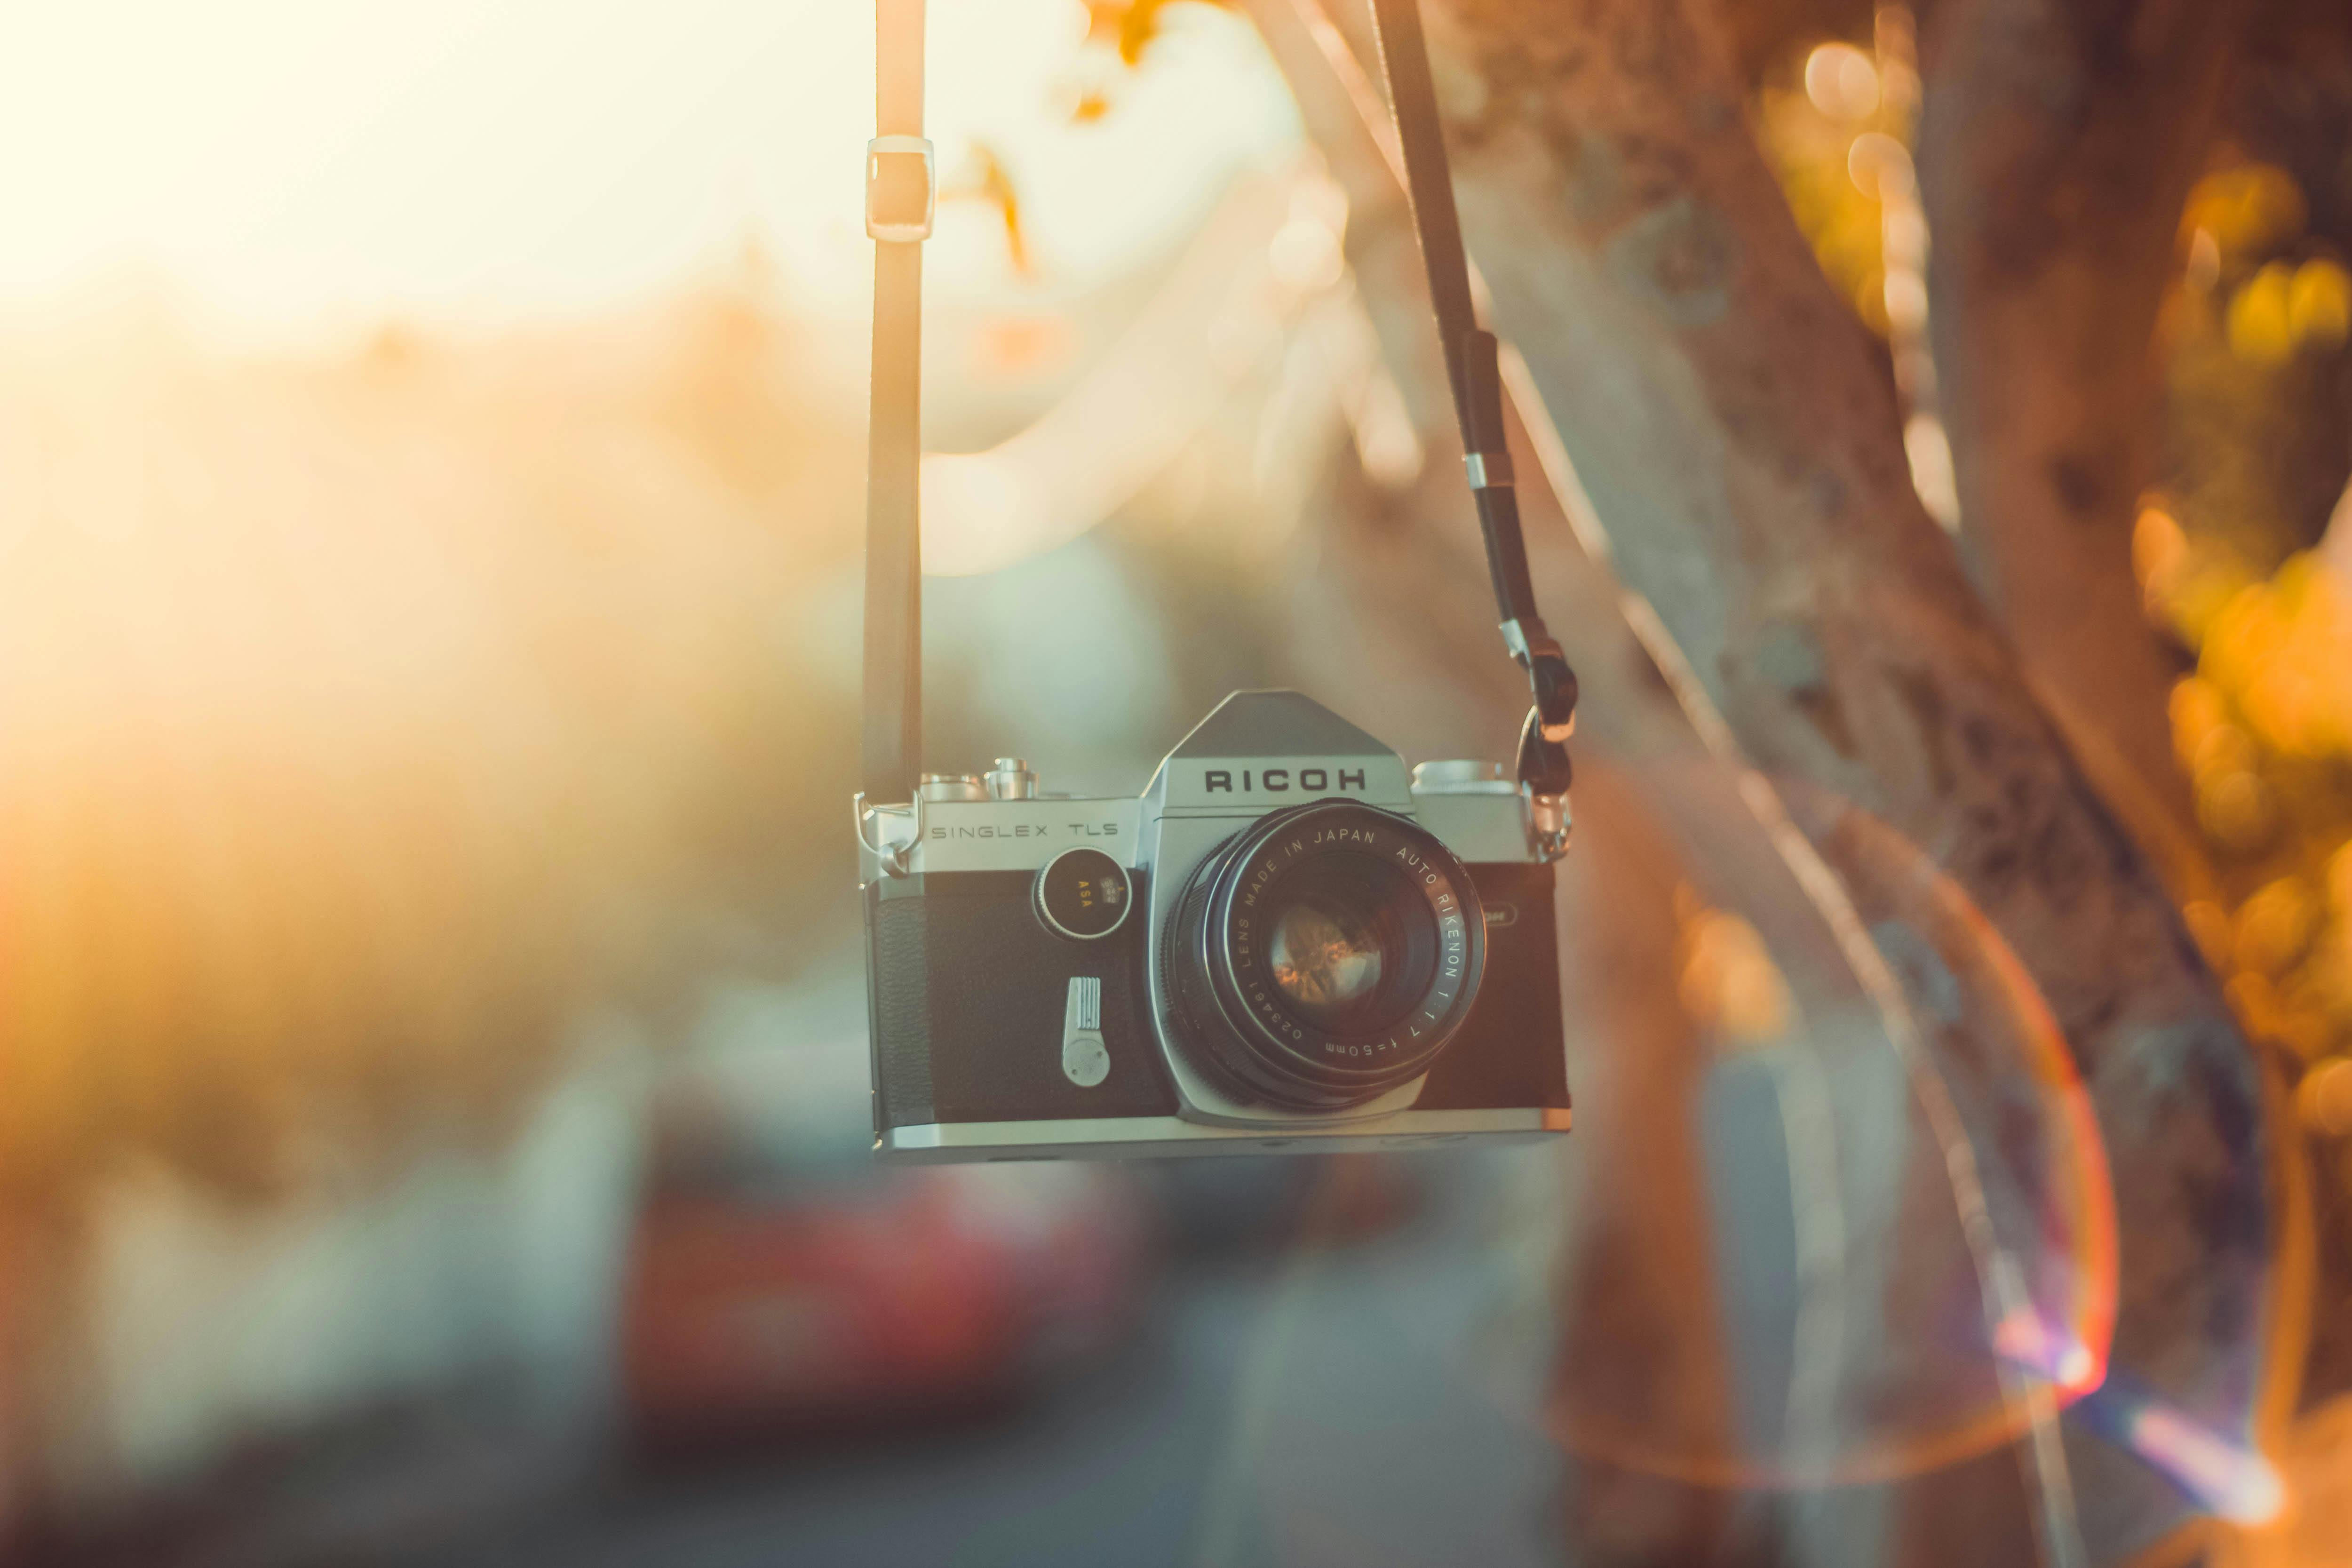 Cùng trải nghiệm máy ảnh Canon Eos 6d, một thiết bị chuyên nghiệp và đầy đủ tính năng chụp ảnh cho mọi lứa tuổi và sở thích. Khám phá tất cả những gì sản phẩm này có thể mang lại trong một lần chụp ảnh.